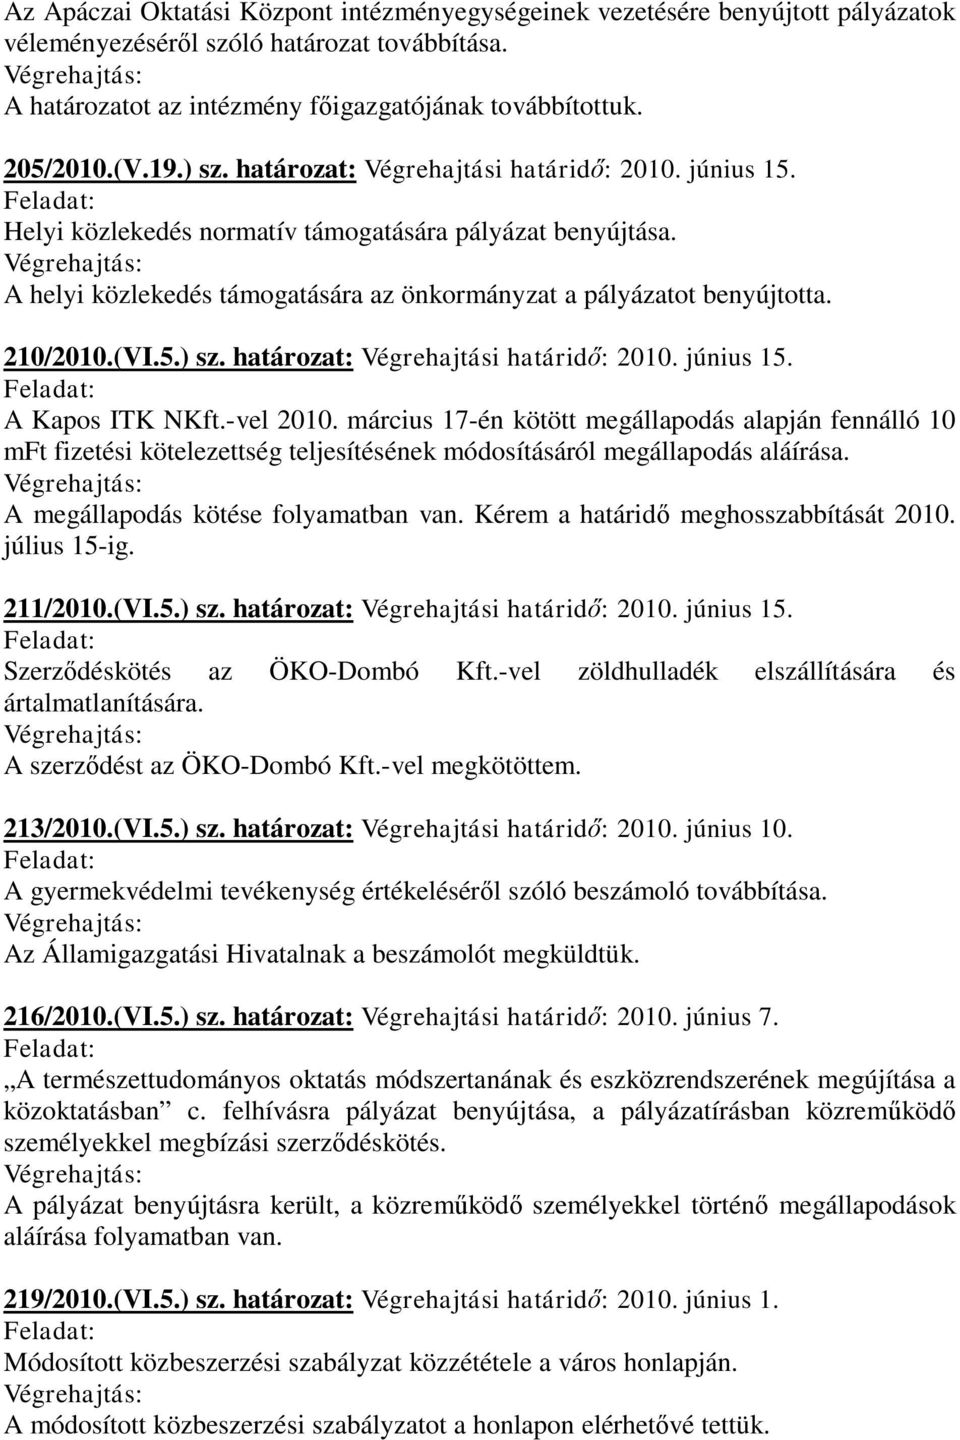 210/2010.(VI.5.) sz. határozat: Végrehajtási határidő: 2010. június 15. A Kapos ITK NKft.-vel 2010.